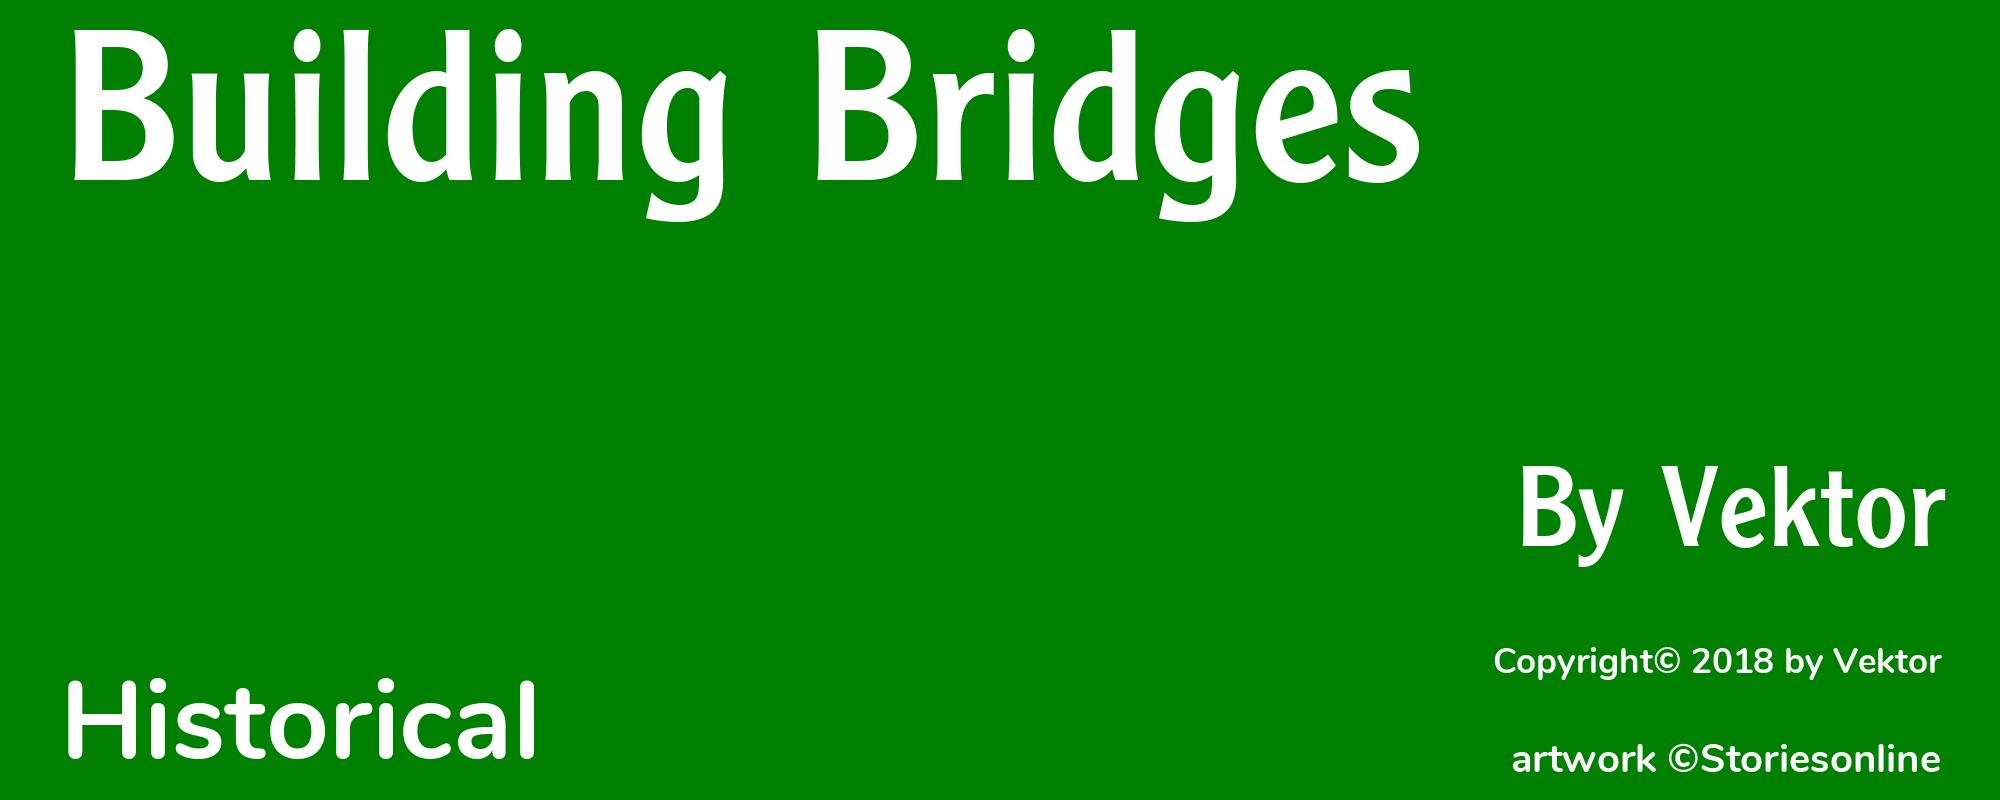 Building Bridges - Cover